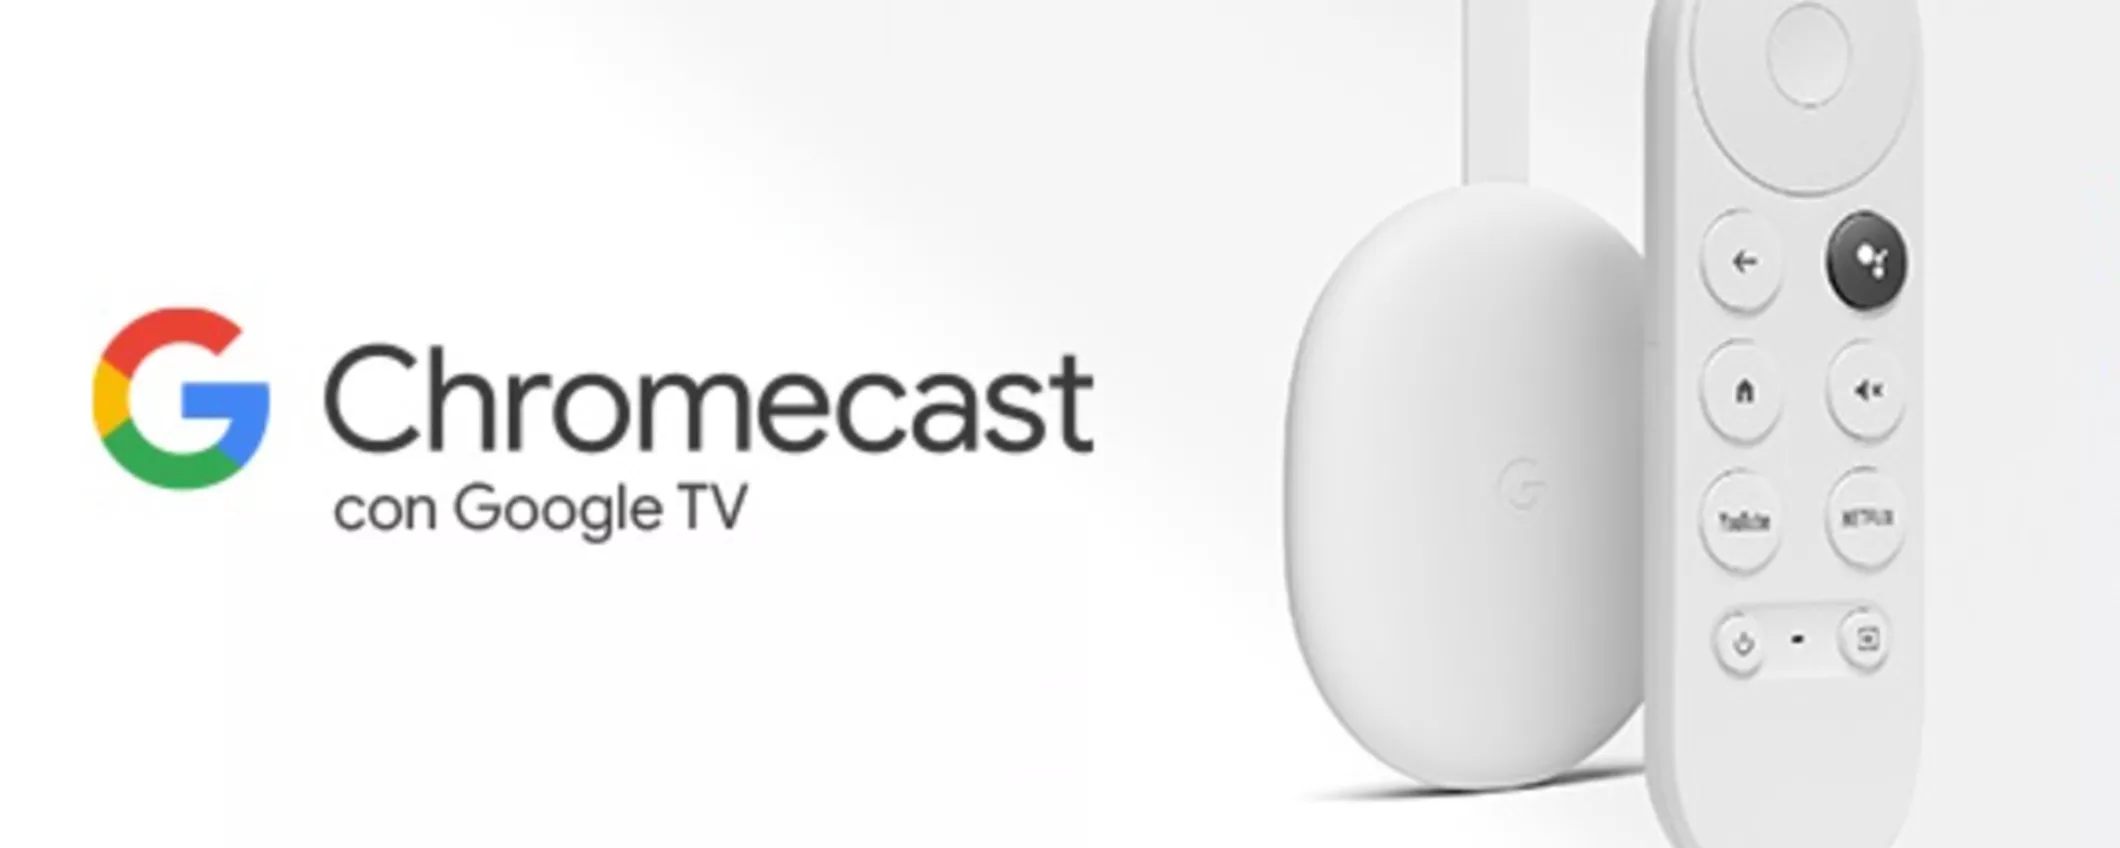 Chromecast con Google TV 4K in 3 rate a interessi zero da 19,97€ al mese (Amazon)